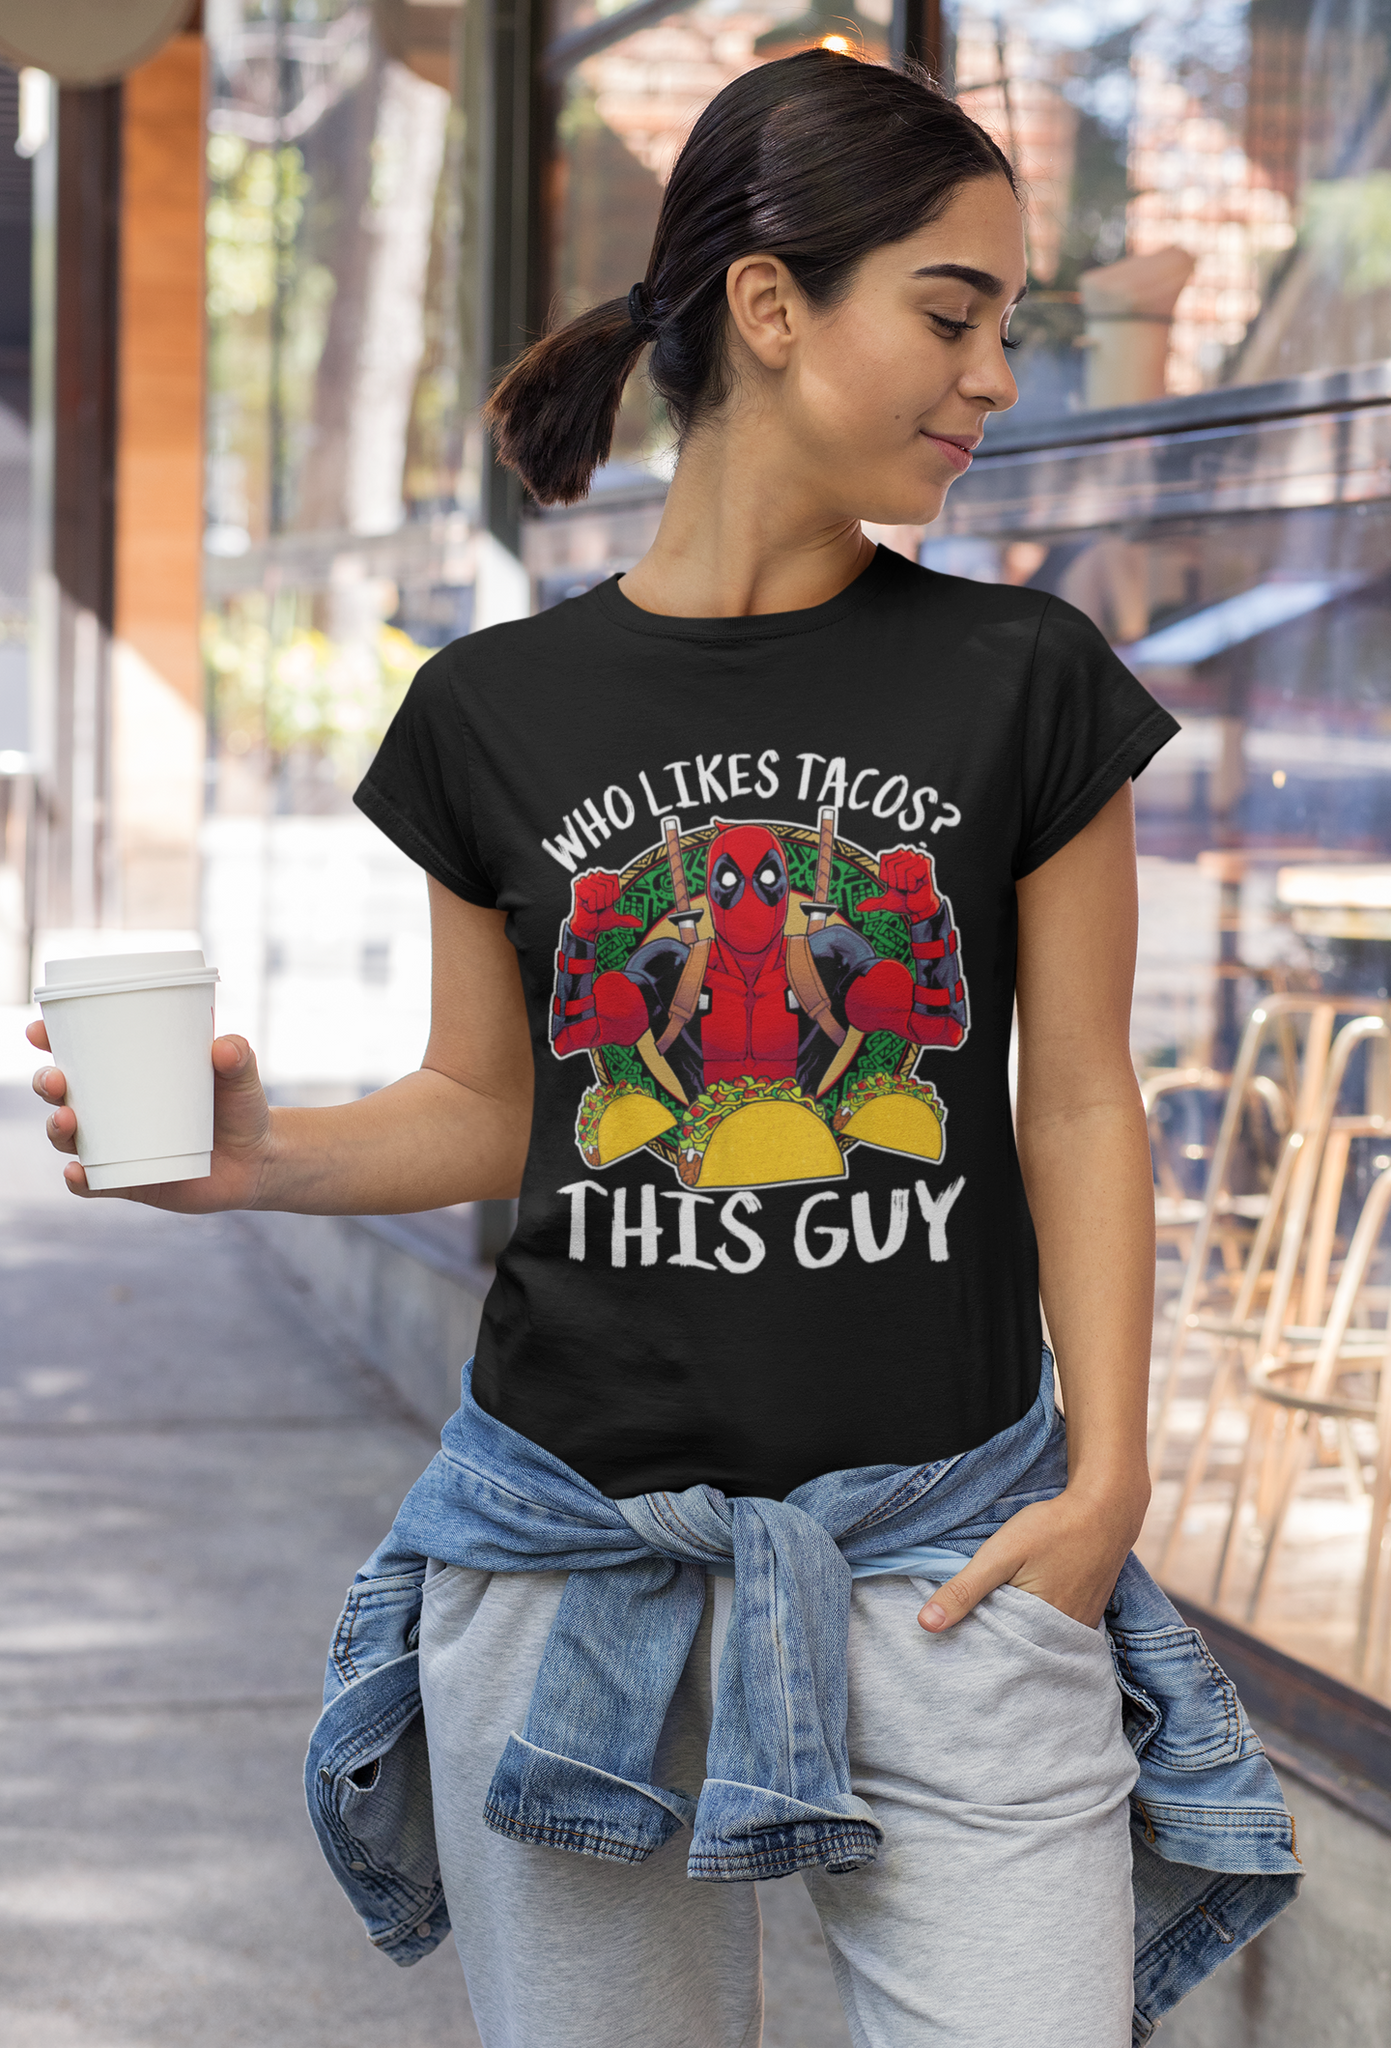 Deadpool T Shirt, Superhero Deadpool T Shirt, Who Likes Tacos This Guy Tshirt